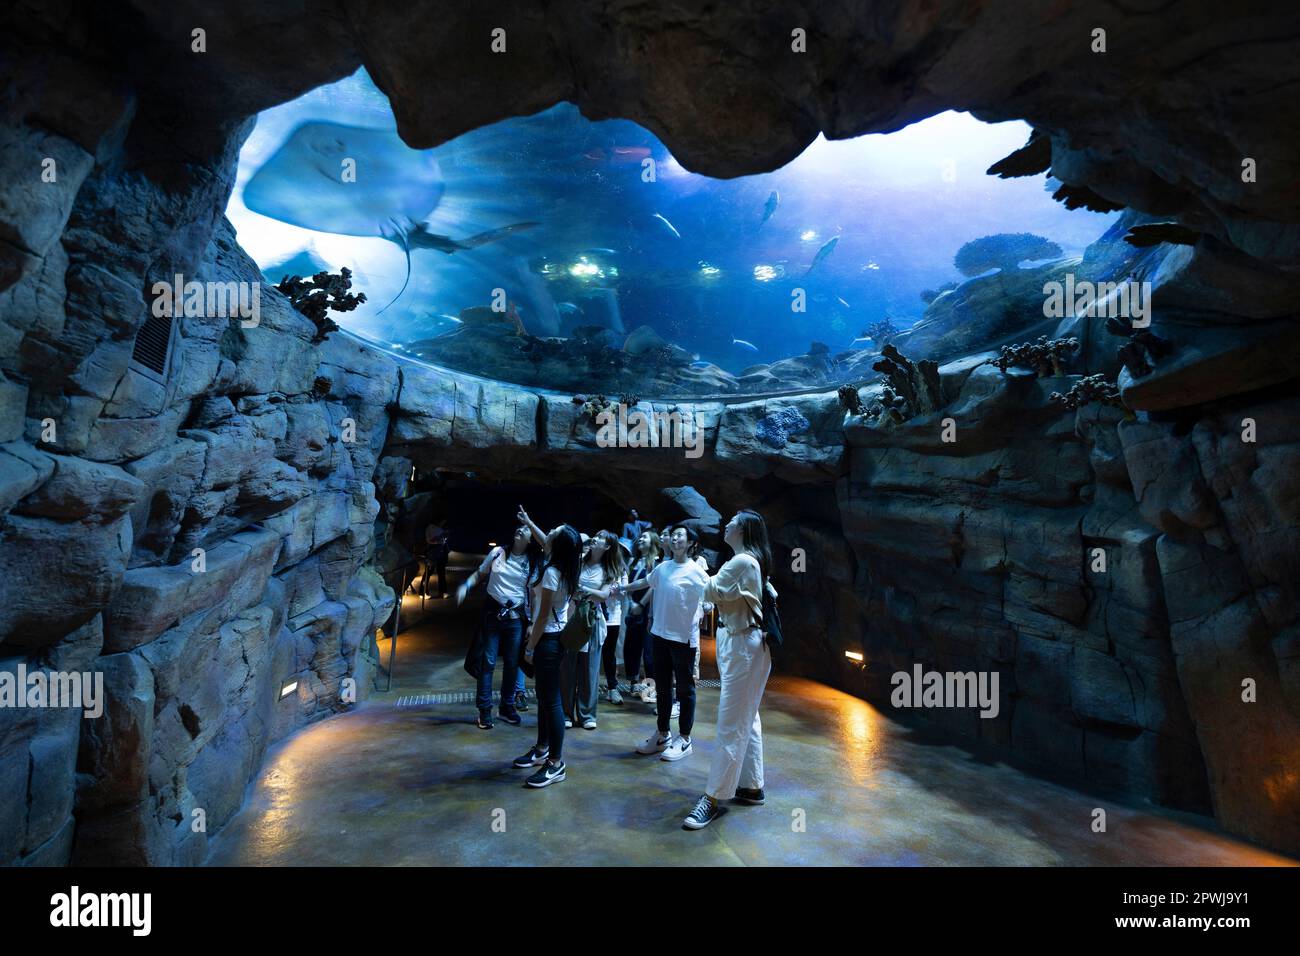 Aquarium, Hong Kong, China. Stock Photo